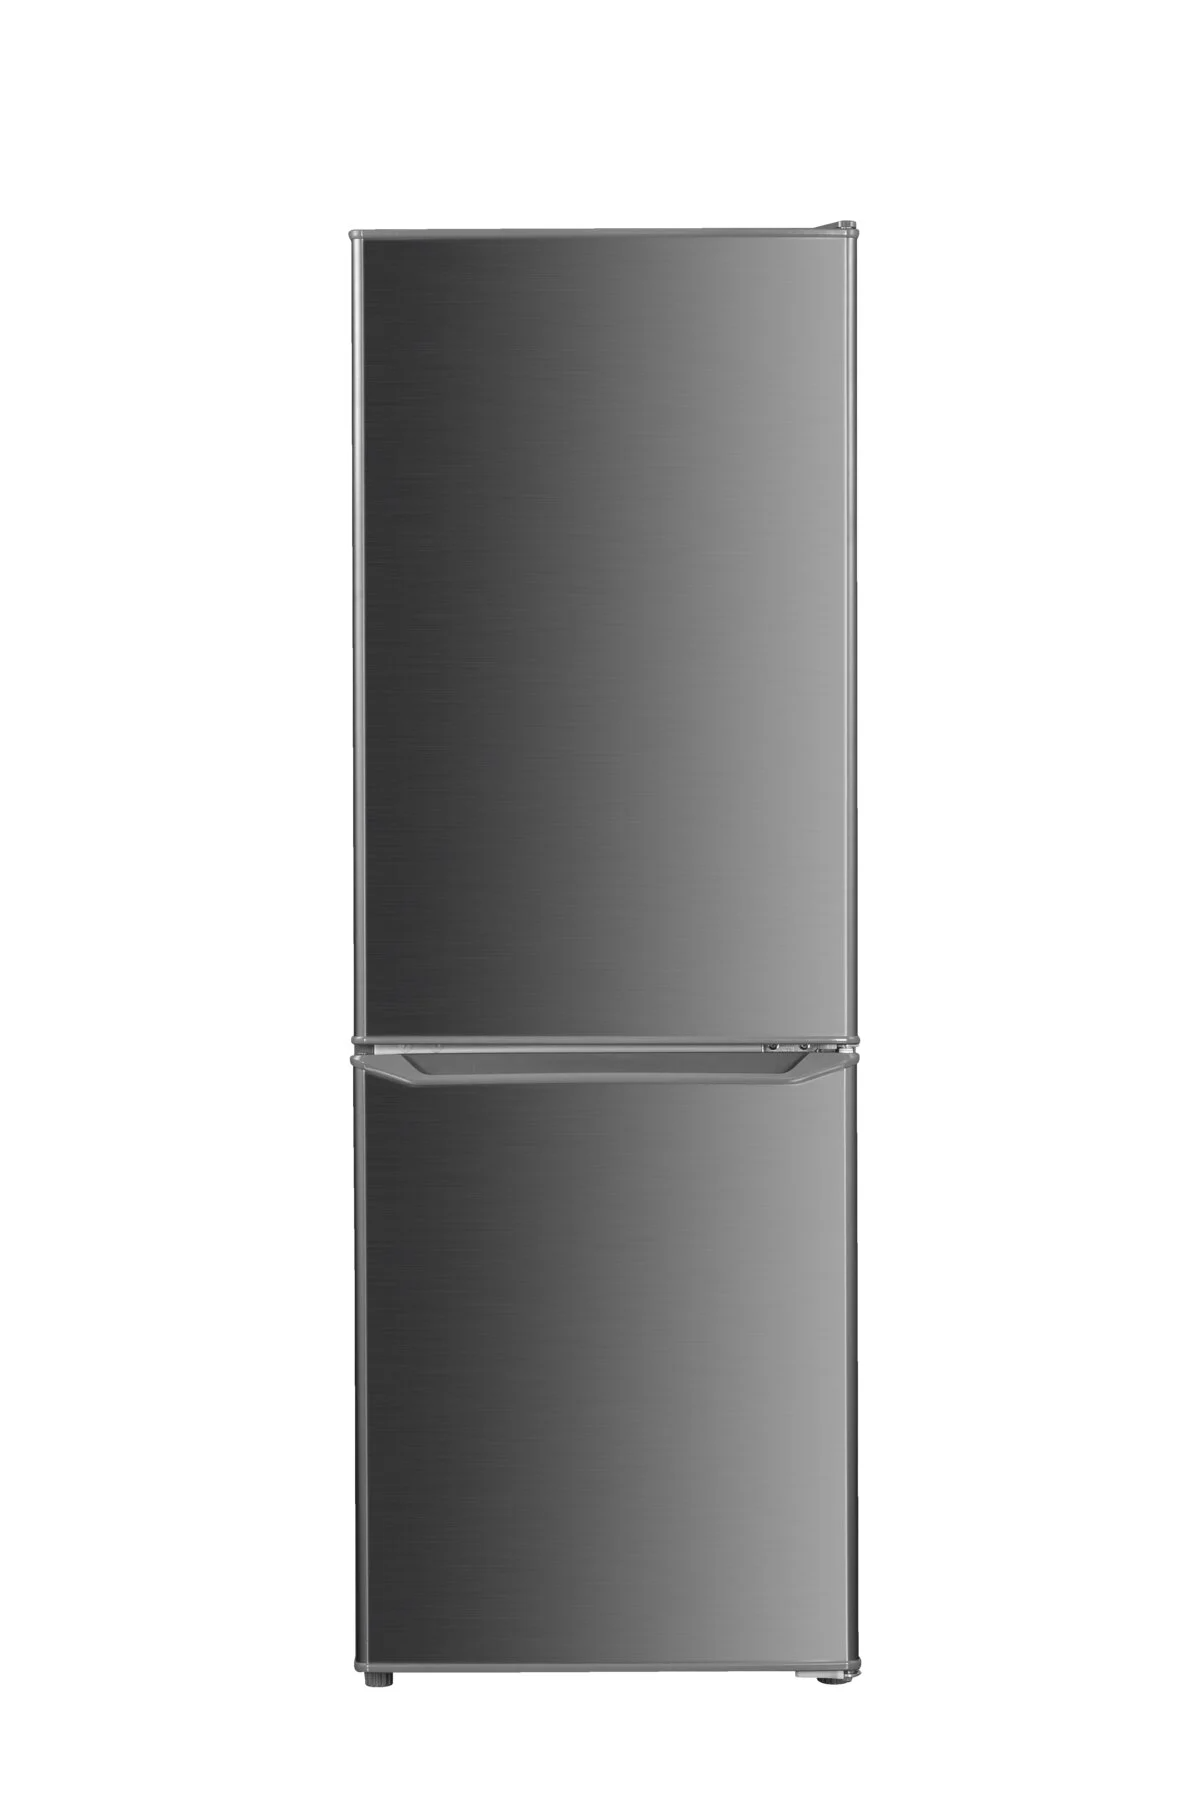 OK OFK411DIN koelkast met vriezer (D, 155 kWh, 1426 mm hoog, RVS lo)